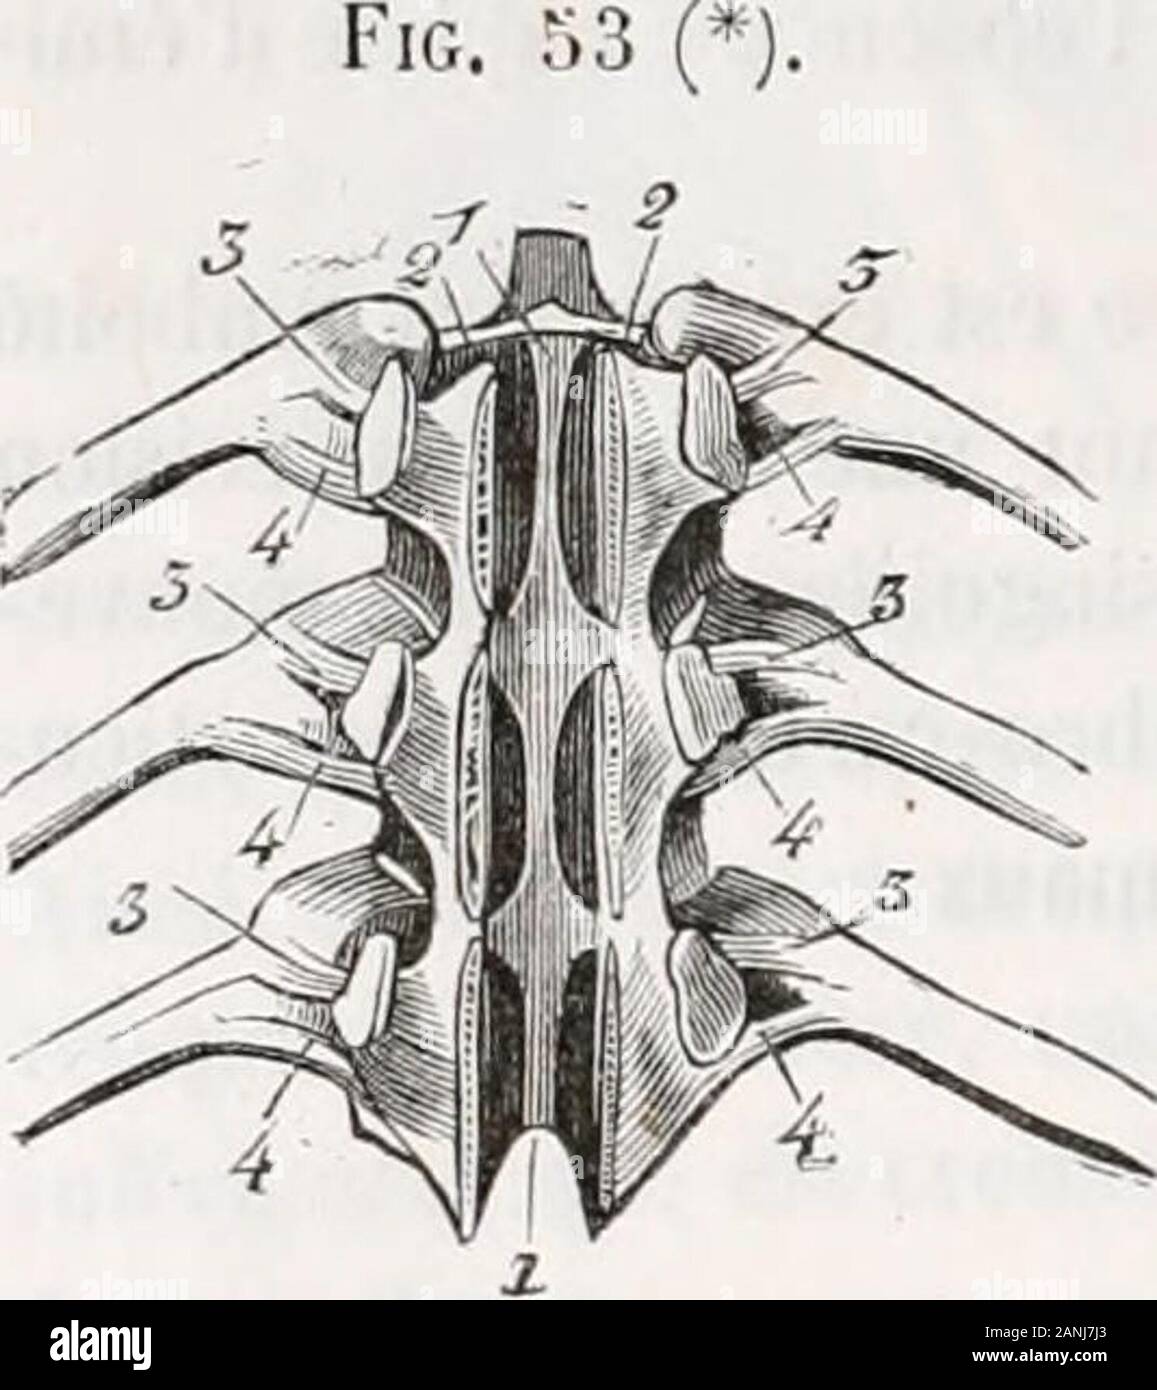 Traité d'anatomie comparée des animaux domestiques . érieur [^^. 5h, 2, 3, k),aplati de dessus en dessous, mince et rayonné, formé de trois faisceaux, qui sefixent en commun sur la face inférieure de la tète de la côte, et se portent, en diverfgéant, sur le corps des deux vertèbres et le disque inter-vertébral. Ta[)issé en hau-par les membranes synoviales, ce ligament est recouvert en bas par la plèvre. Synoviales. —On en compte deux, distinguées en antérieure et en postérieure,adossées lune contre lautre, et séparées en partie par le ligament inter-articulaire,quelles revêlent. Soutenues en Stock Photo